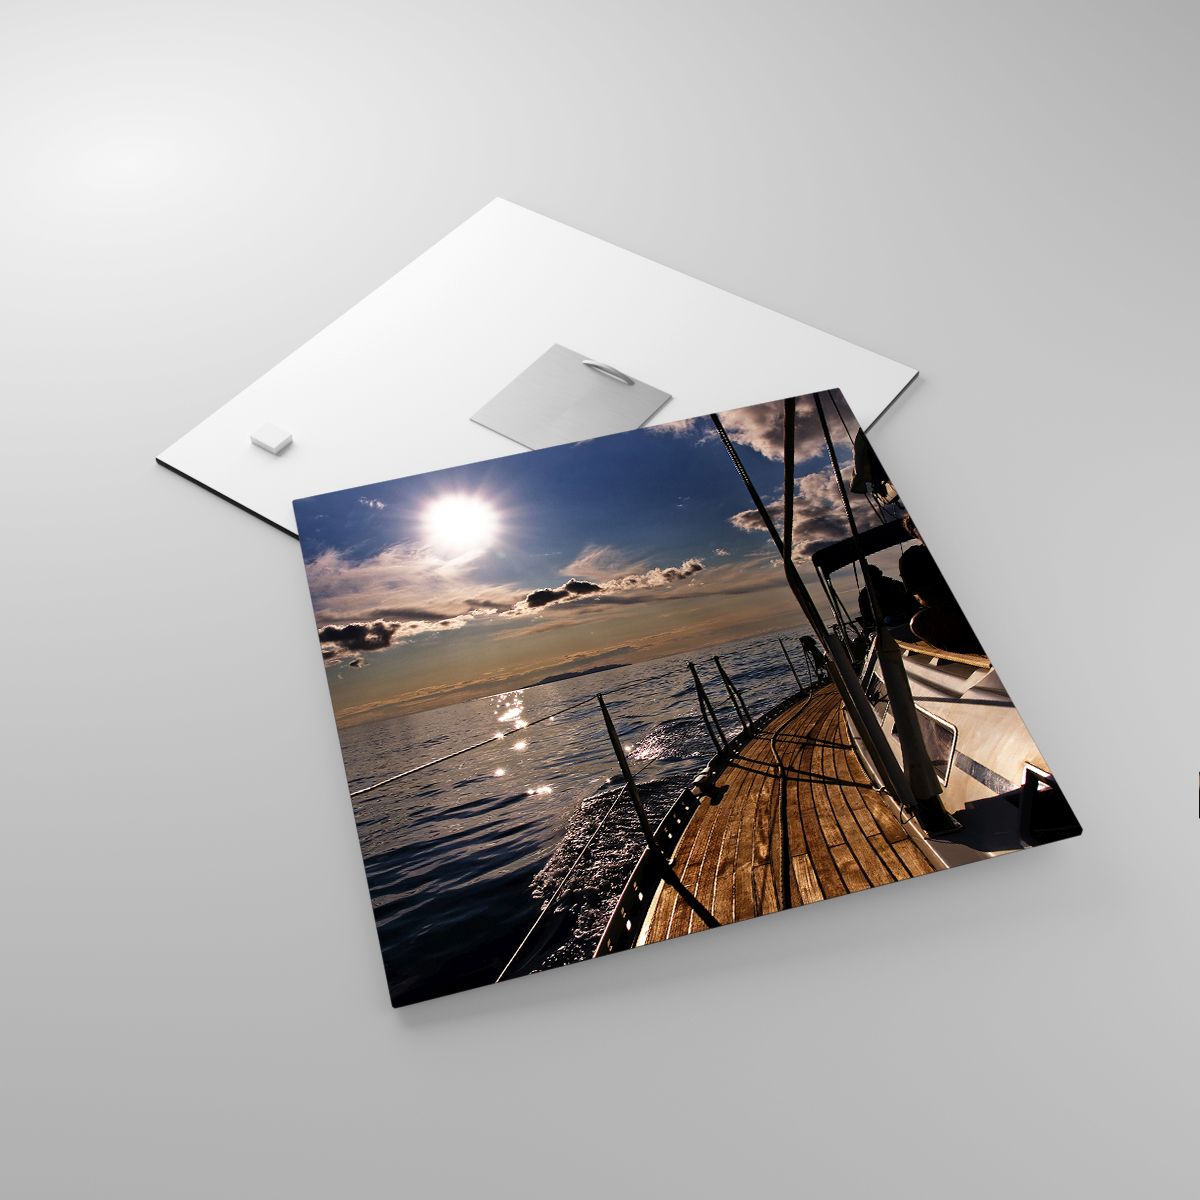 Glasbild Marine, Glasbild Yacht, Glasbild Meer, Glasbild Der Sonnenuntergang, Glasbild Personen